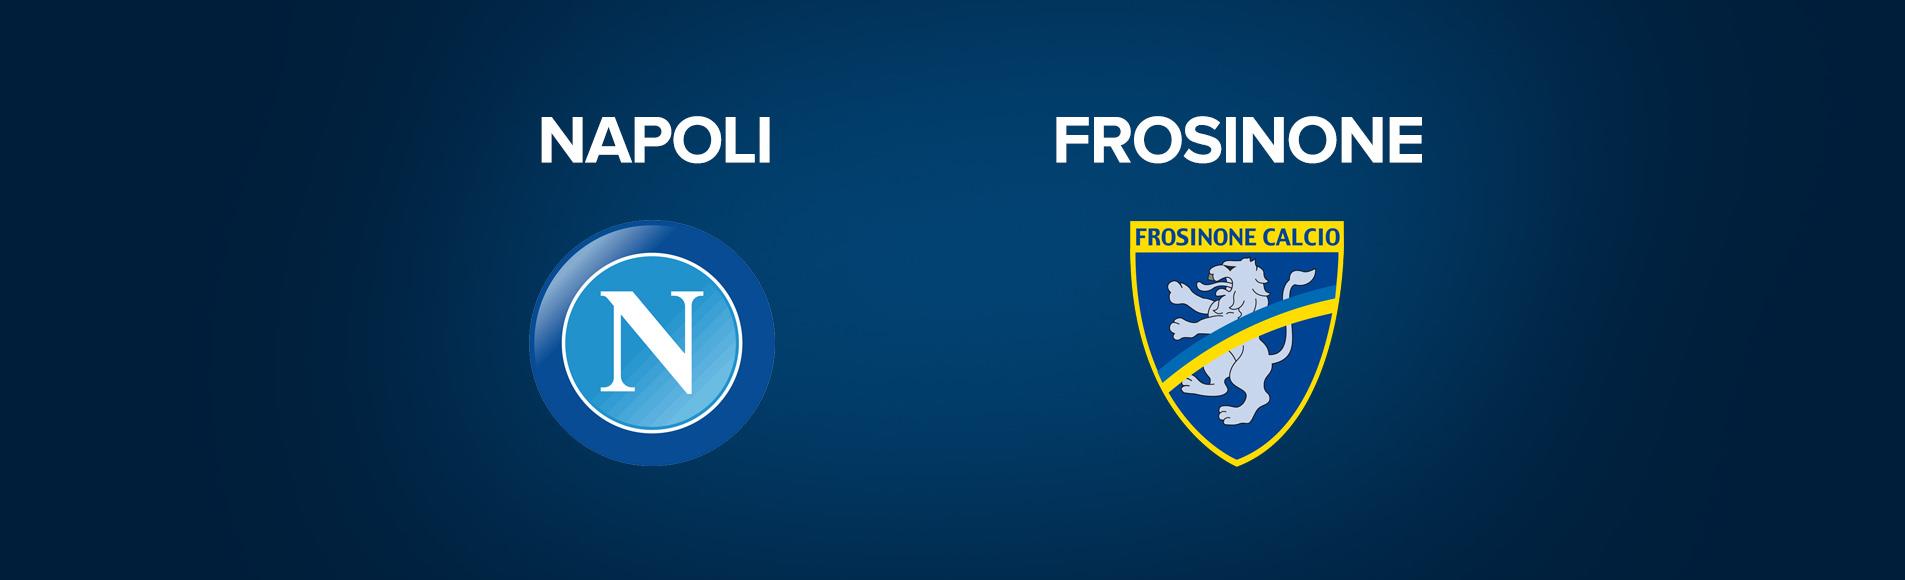 Napoli-Frosinone: dove vedere la partita in tv e diretta streaming - NAPOLI CALCIO